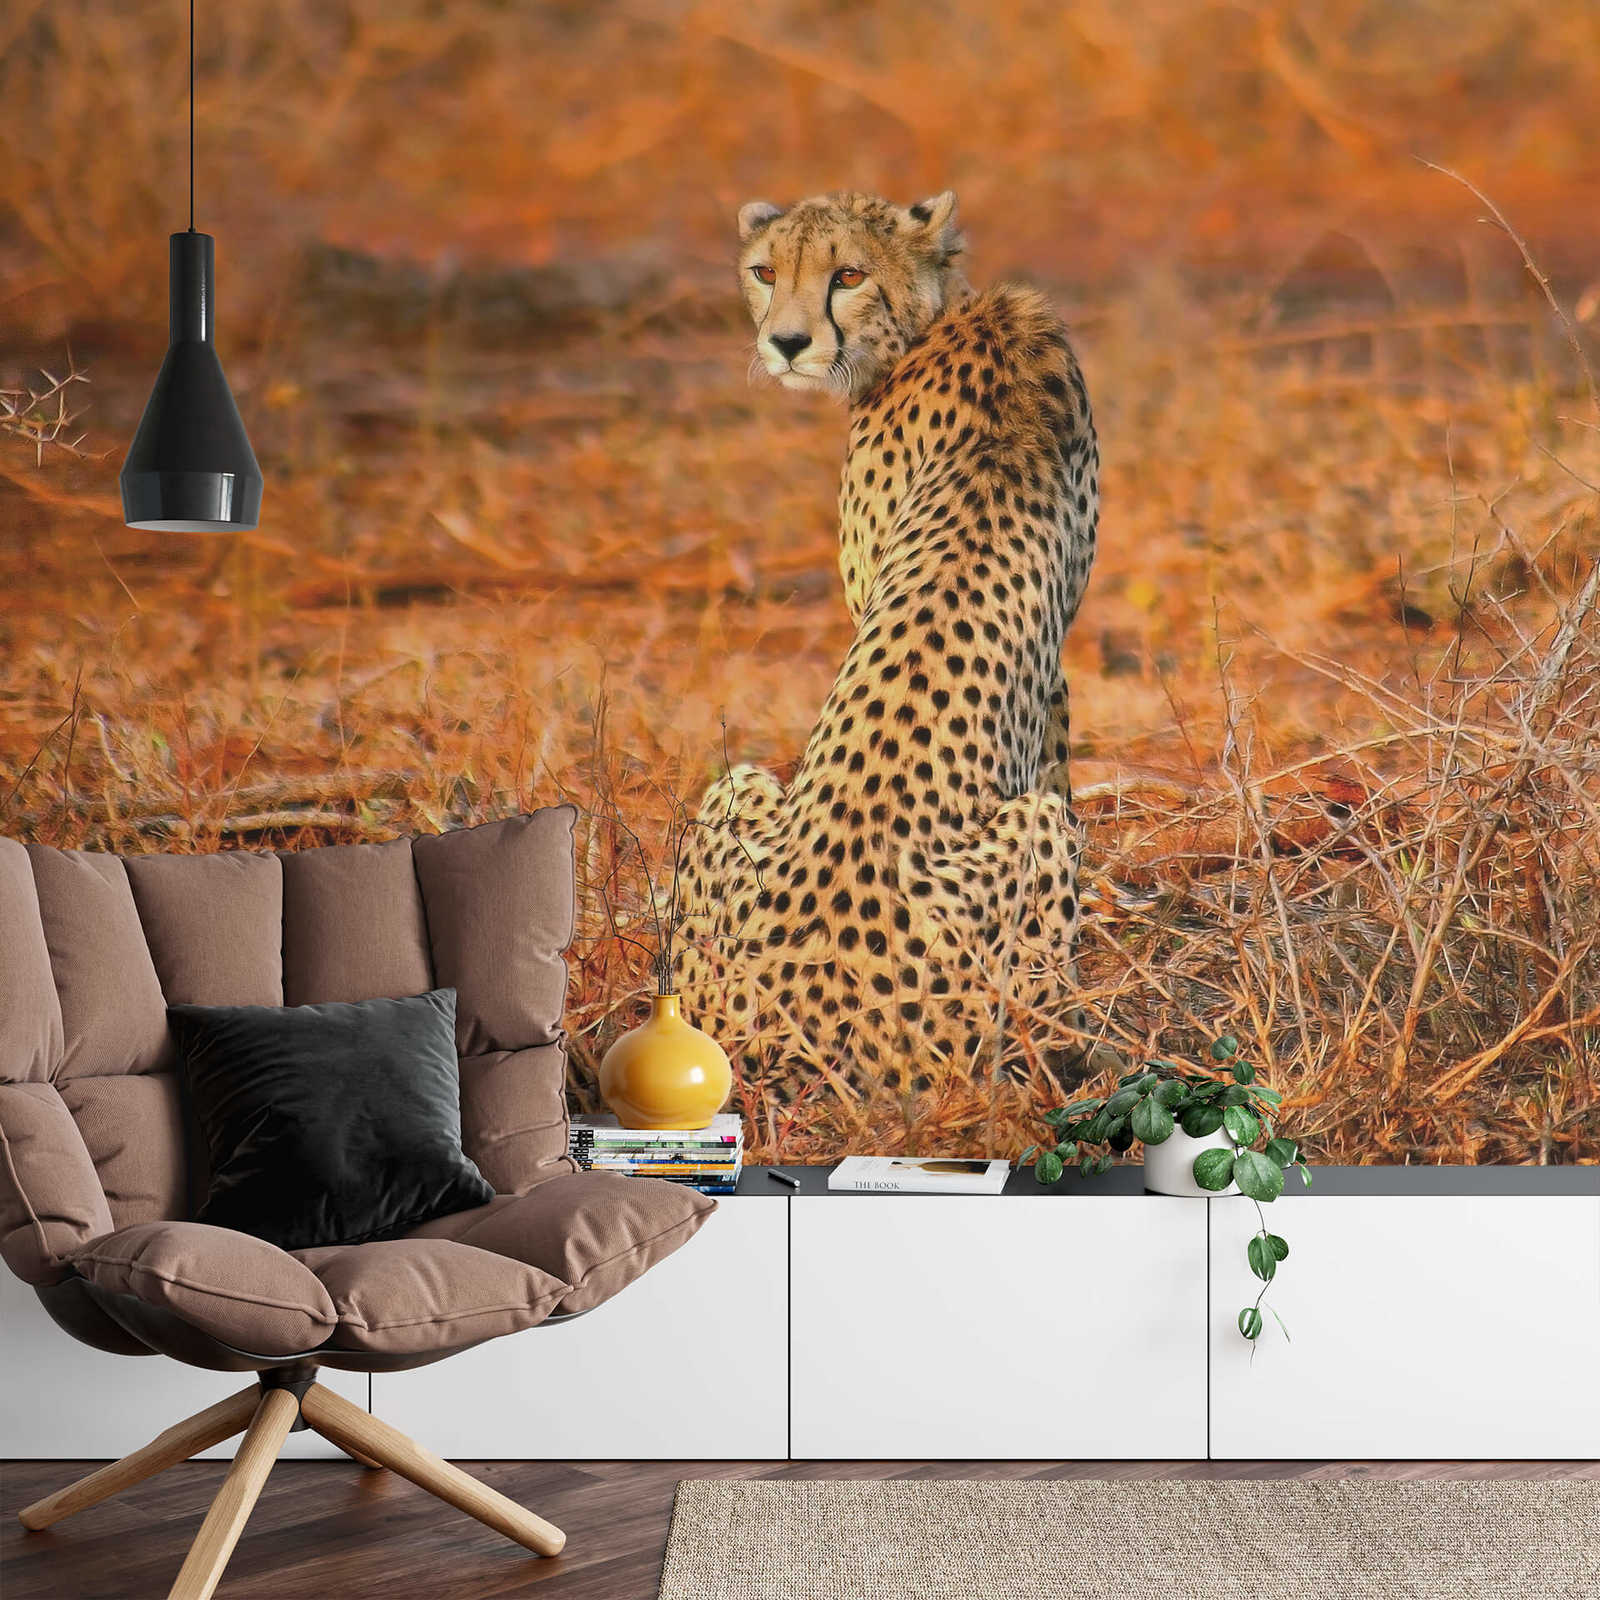             Fototapete Leopard in Natur – Gelb, Orange, Schwarz
        